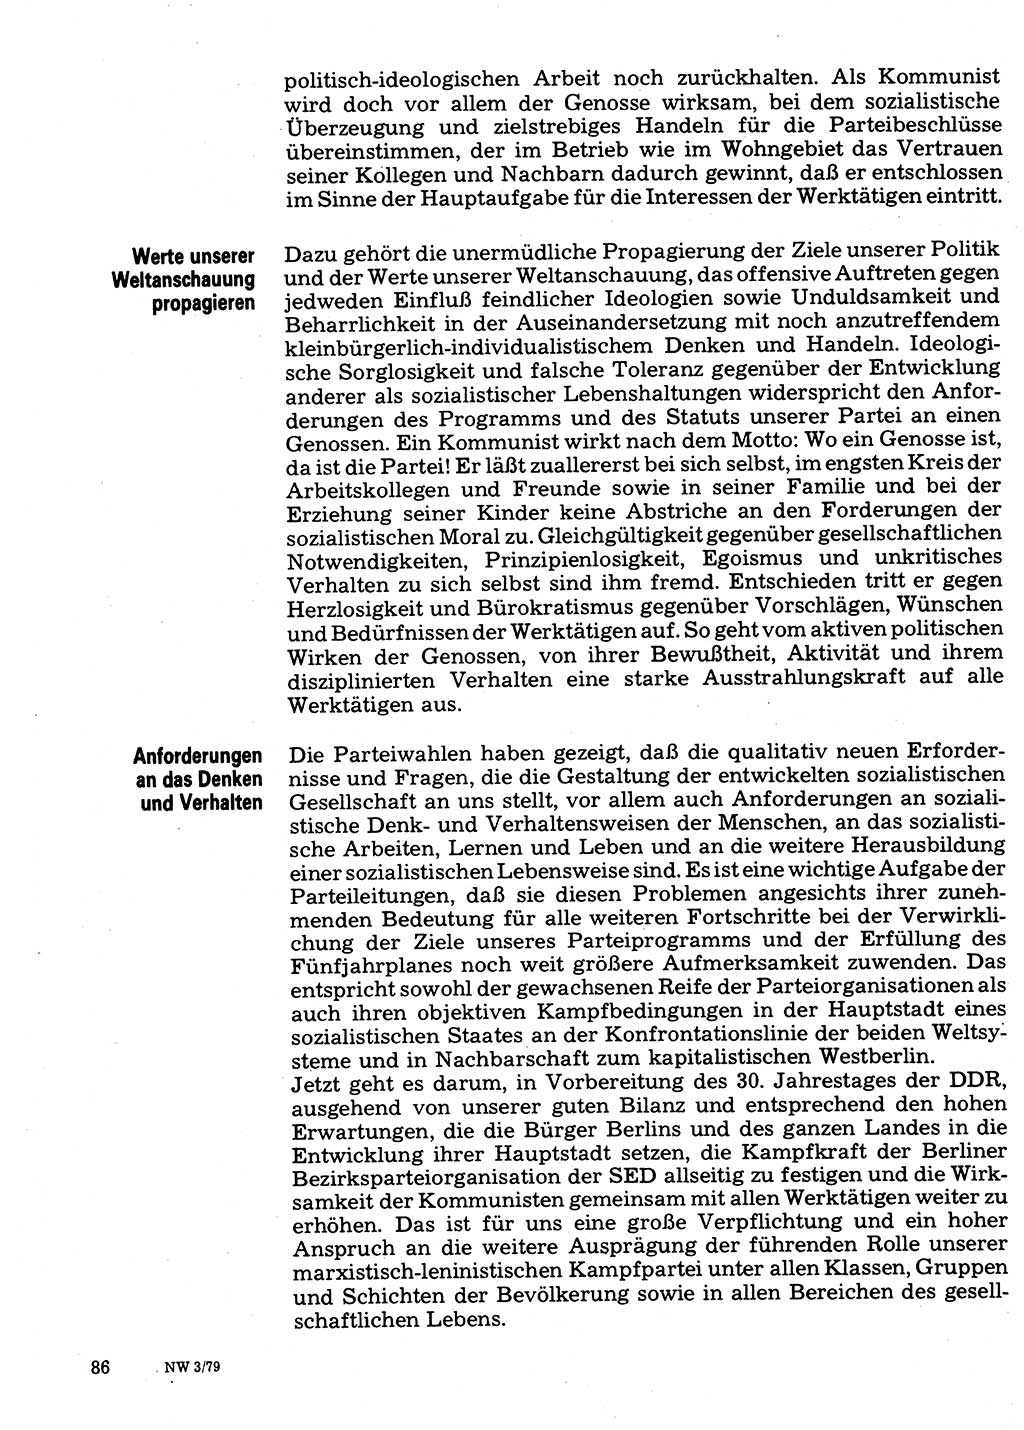 Neuer Weg (NW), Organ des Zentralkomitees (ZK) der SED (Sozialistische Einheitspartei Deutschlands) für Fragen des Parteilebens, 34. Jahrgang [Deutsche Demokratische Republik (DDR)] 1979, Seite 86 (NW ZK SED DDR 1979, S. 86)